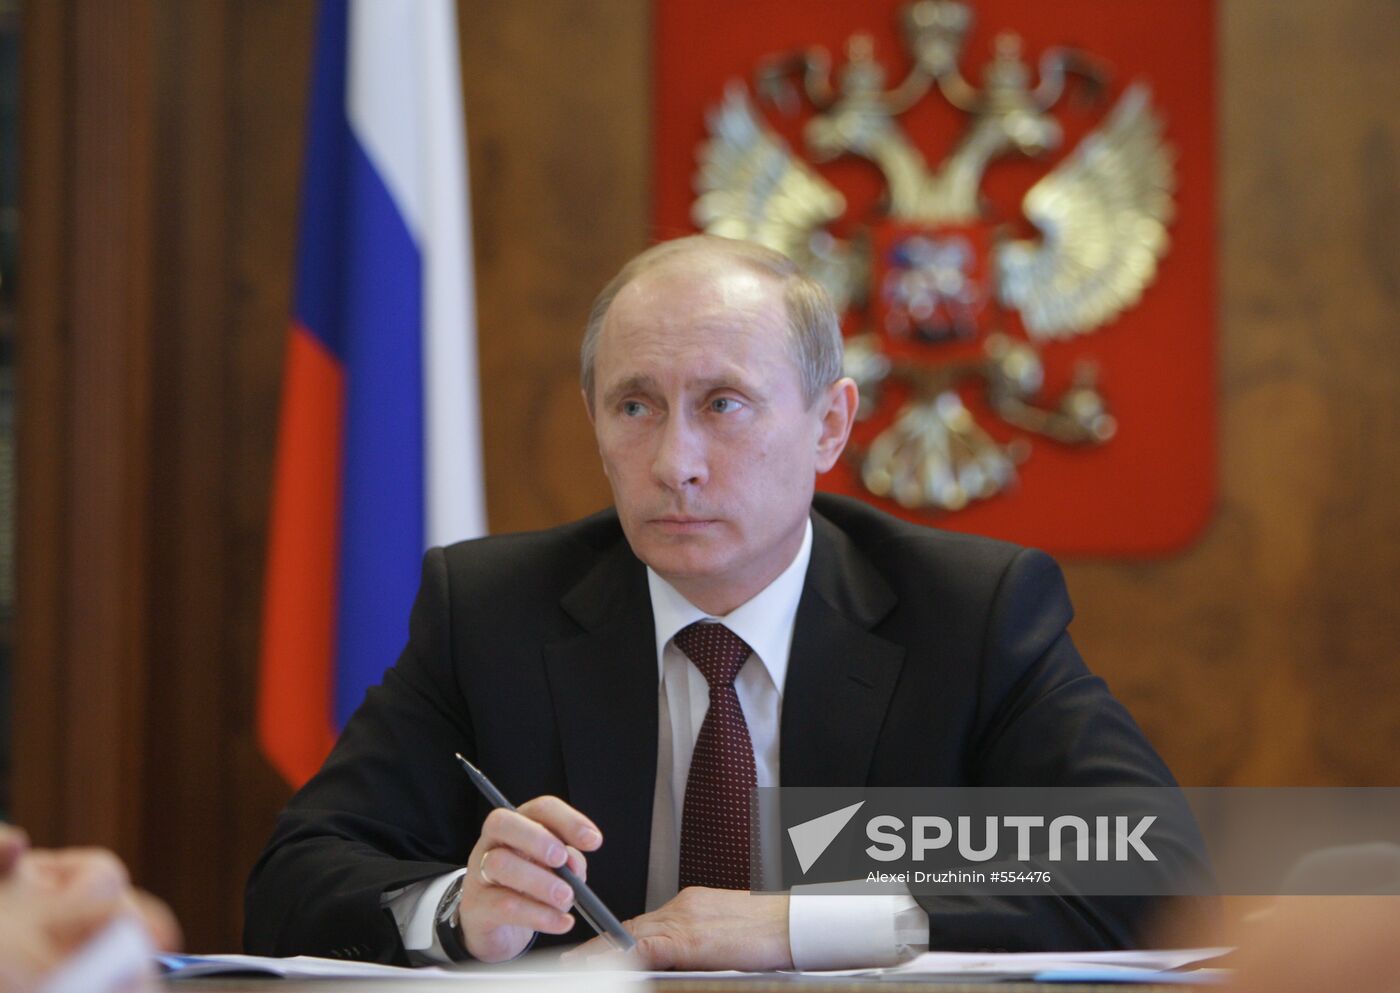 Vladimir Putin pays visit to Pyatigorsk